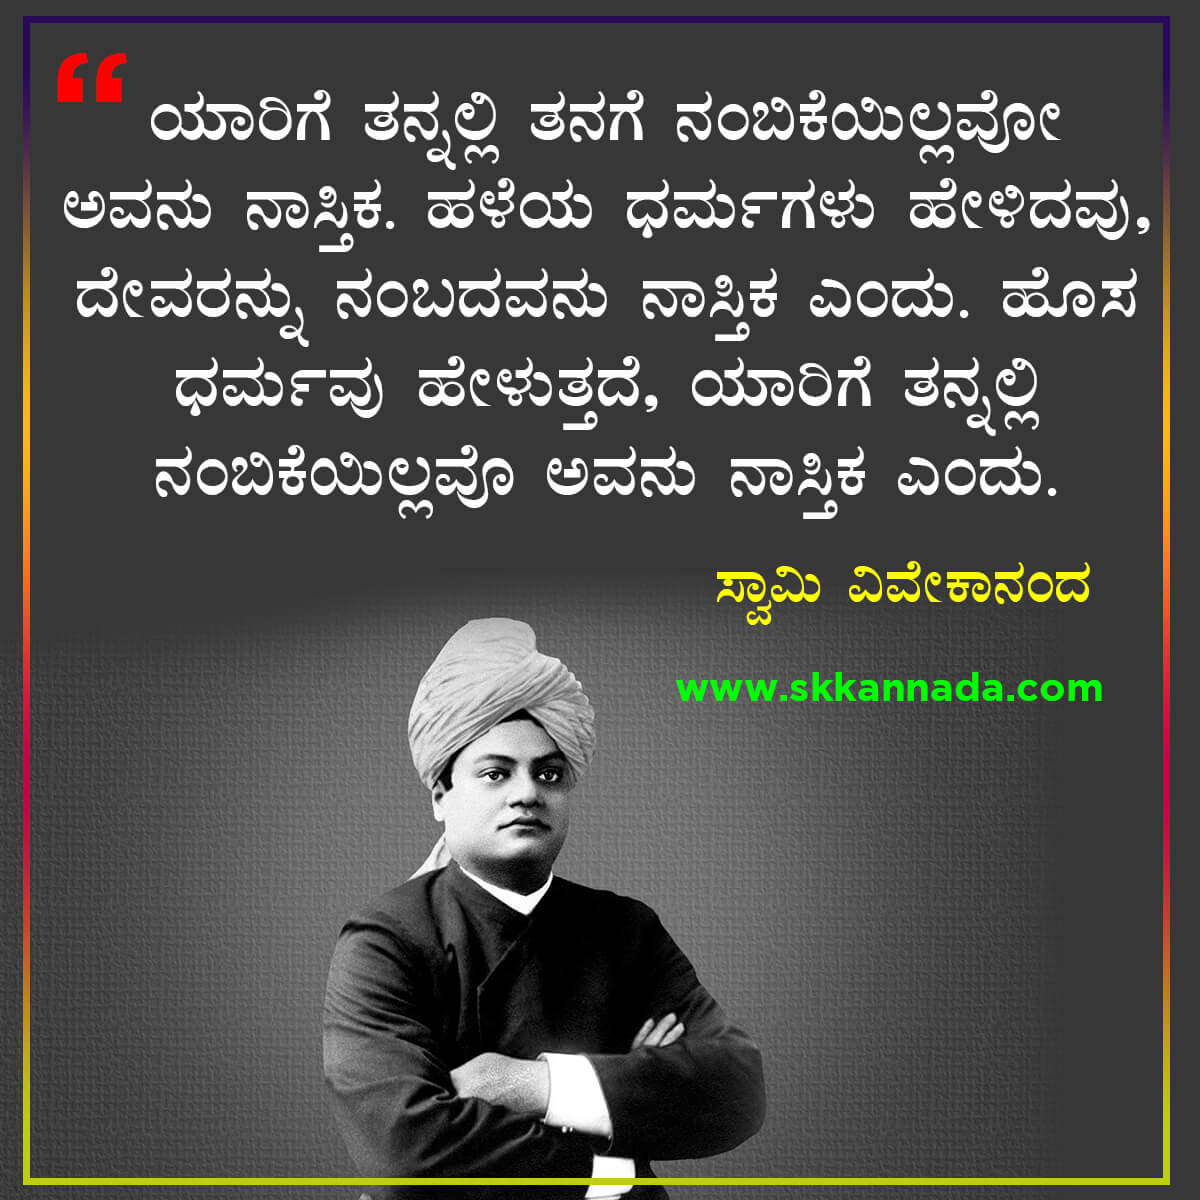 ವಿವೇಕಾನಂದರ ವಿದ್ಯುತ ವಾಣಿ : 61 Quotes of Swami Vivekananda in Kannada